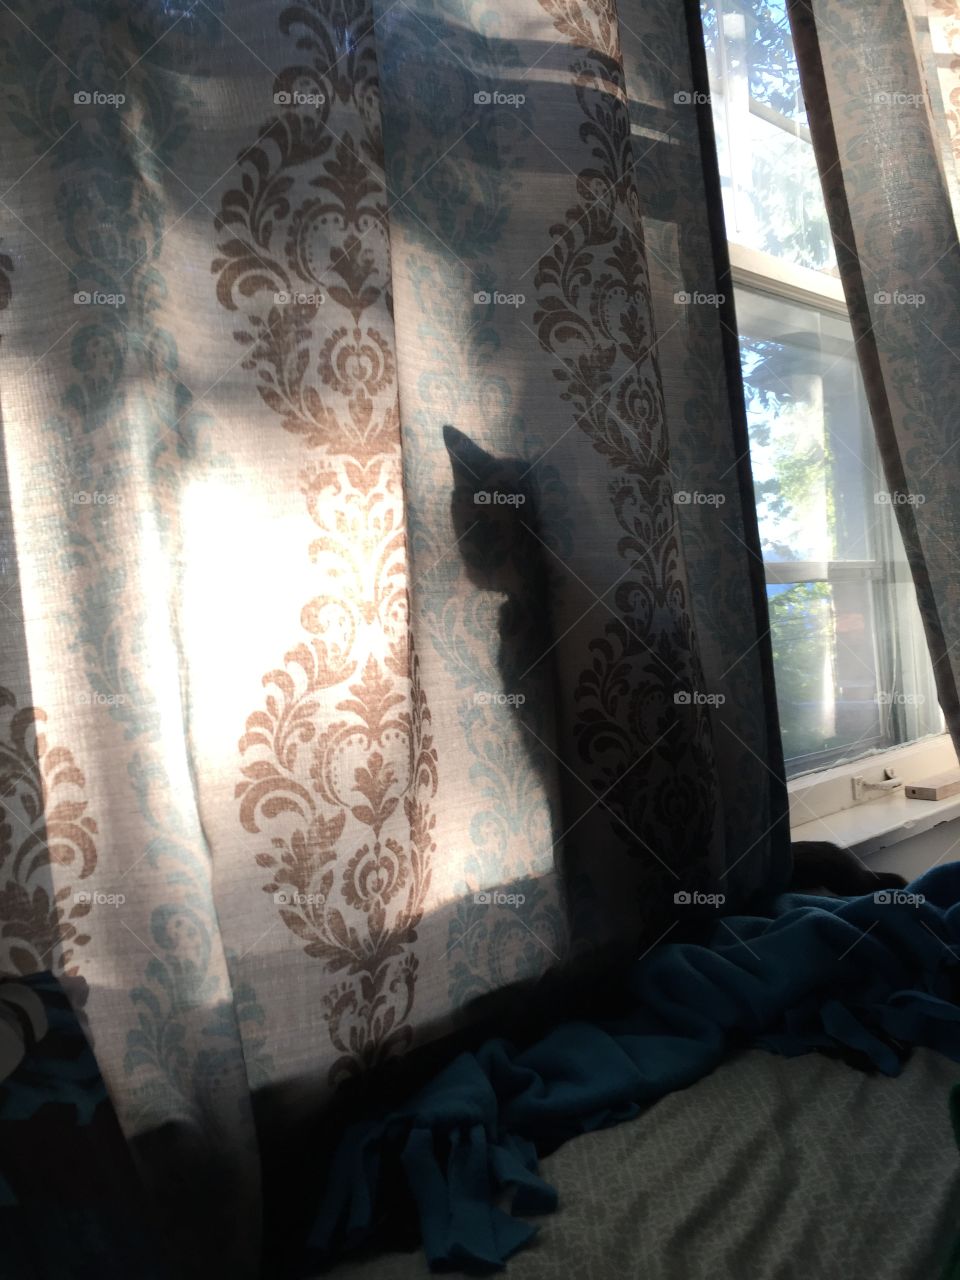 Cat in window 